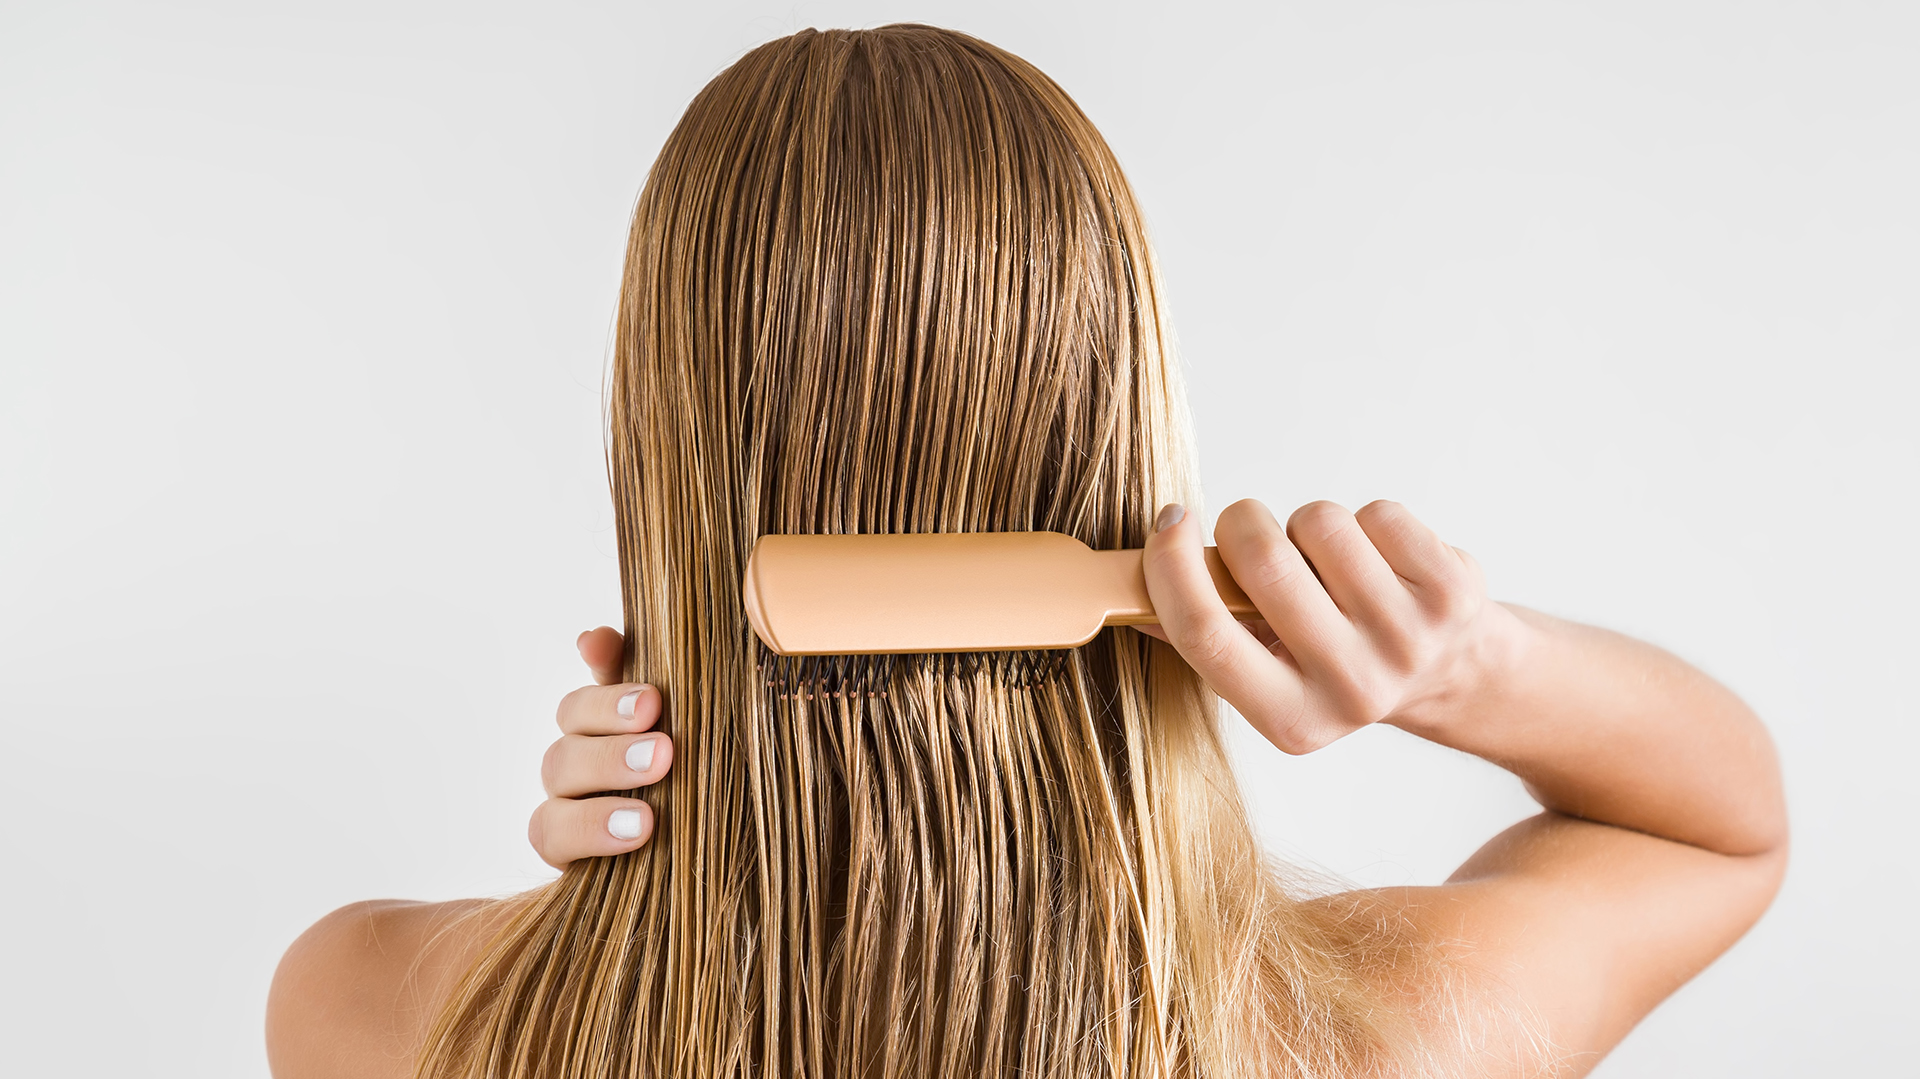 Cómo controlar el pelo en casa con las peluquerías cerradas (Shutterstock.com)